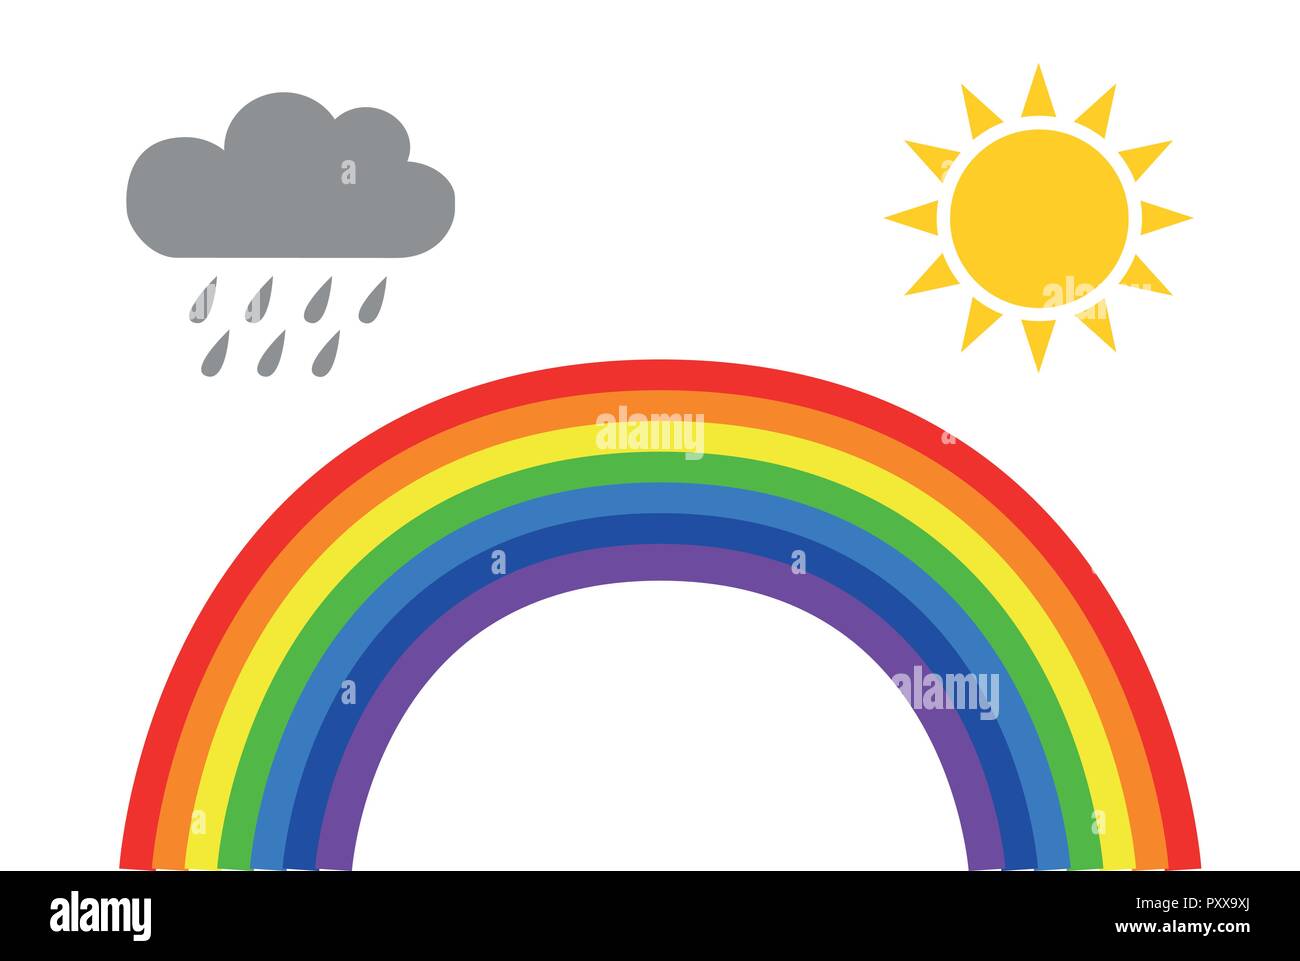 Das Symbol Regenbogen Wetter mit Regen, Wolken und Sonne auf weißem Hintergrund Vektor-illustration EPS 10 isoliert Stock Vektor